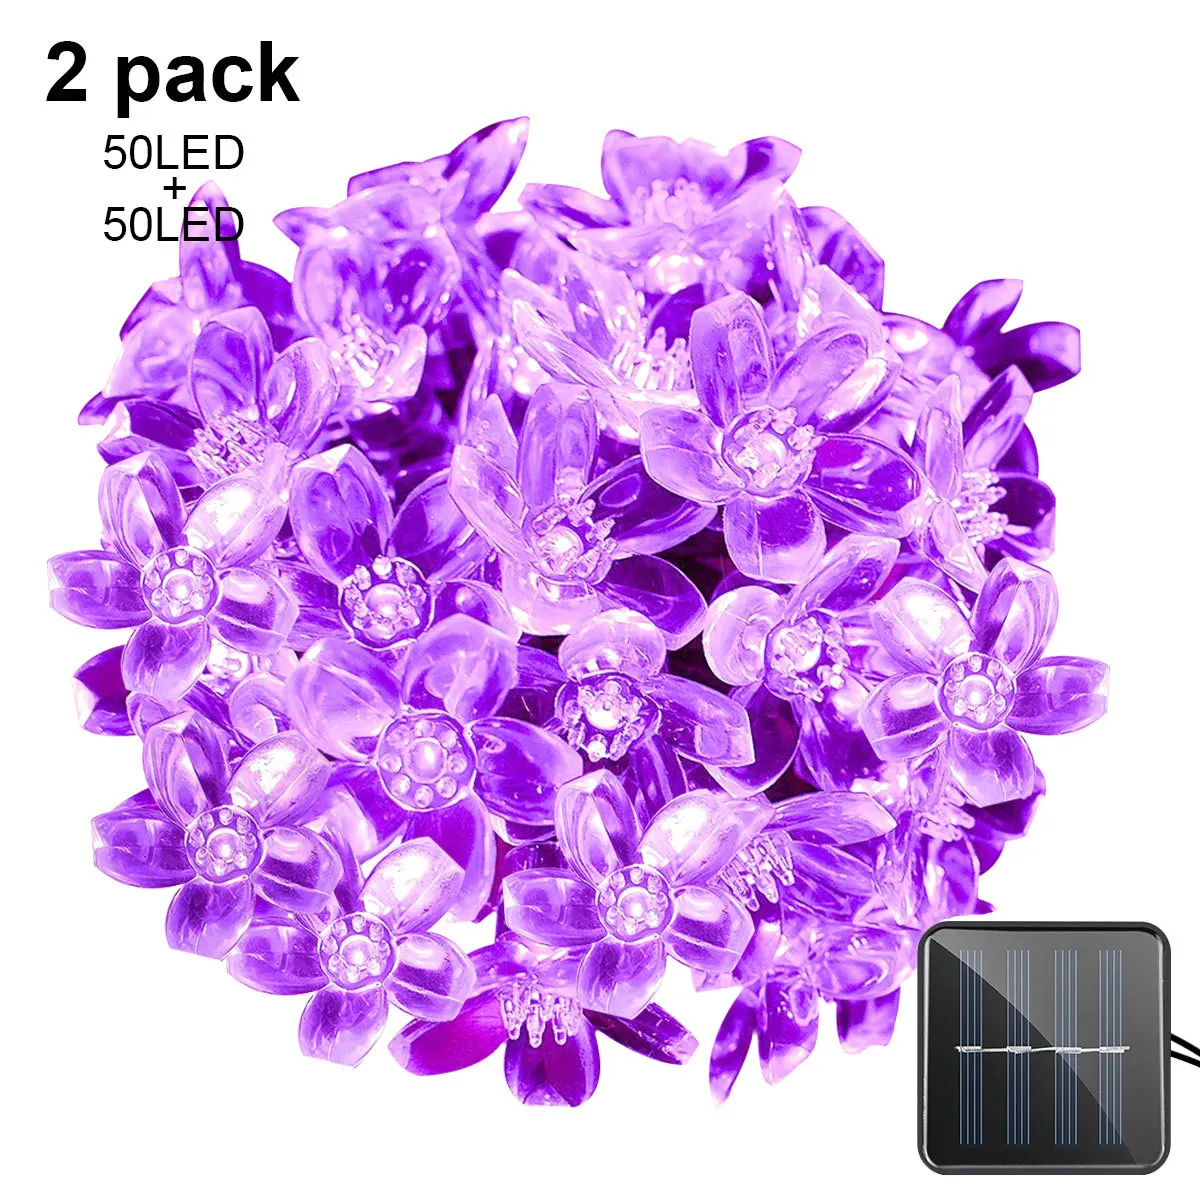 Binval светодиодные лампы на солнечных батареях, свадебные украшения, праздничное освещение, Персиковое светодиодное сказочное освещение-2 шт. в упаковке - Испускаемый цвет: Purple